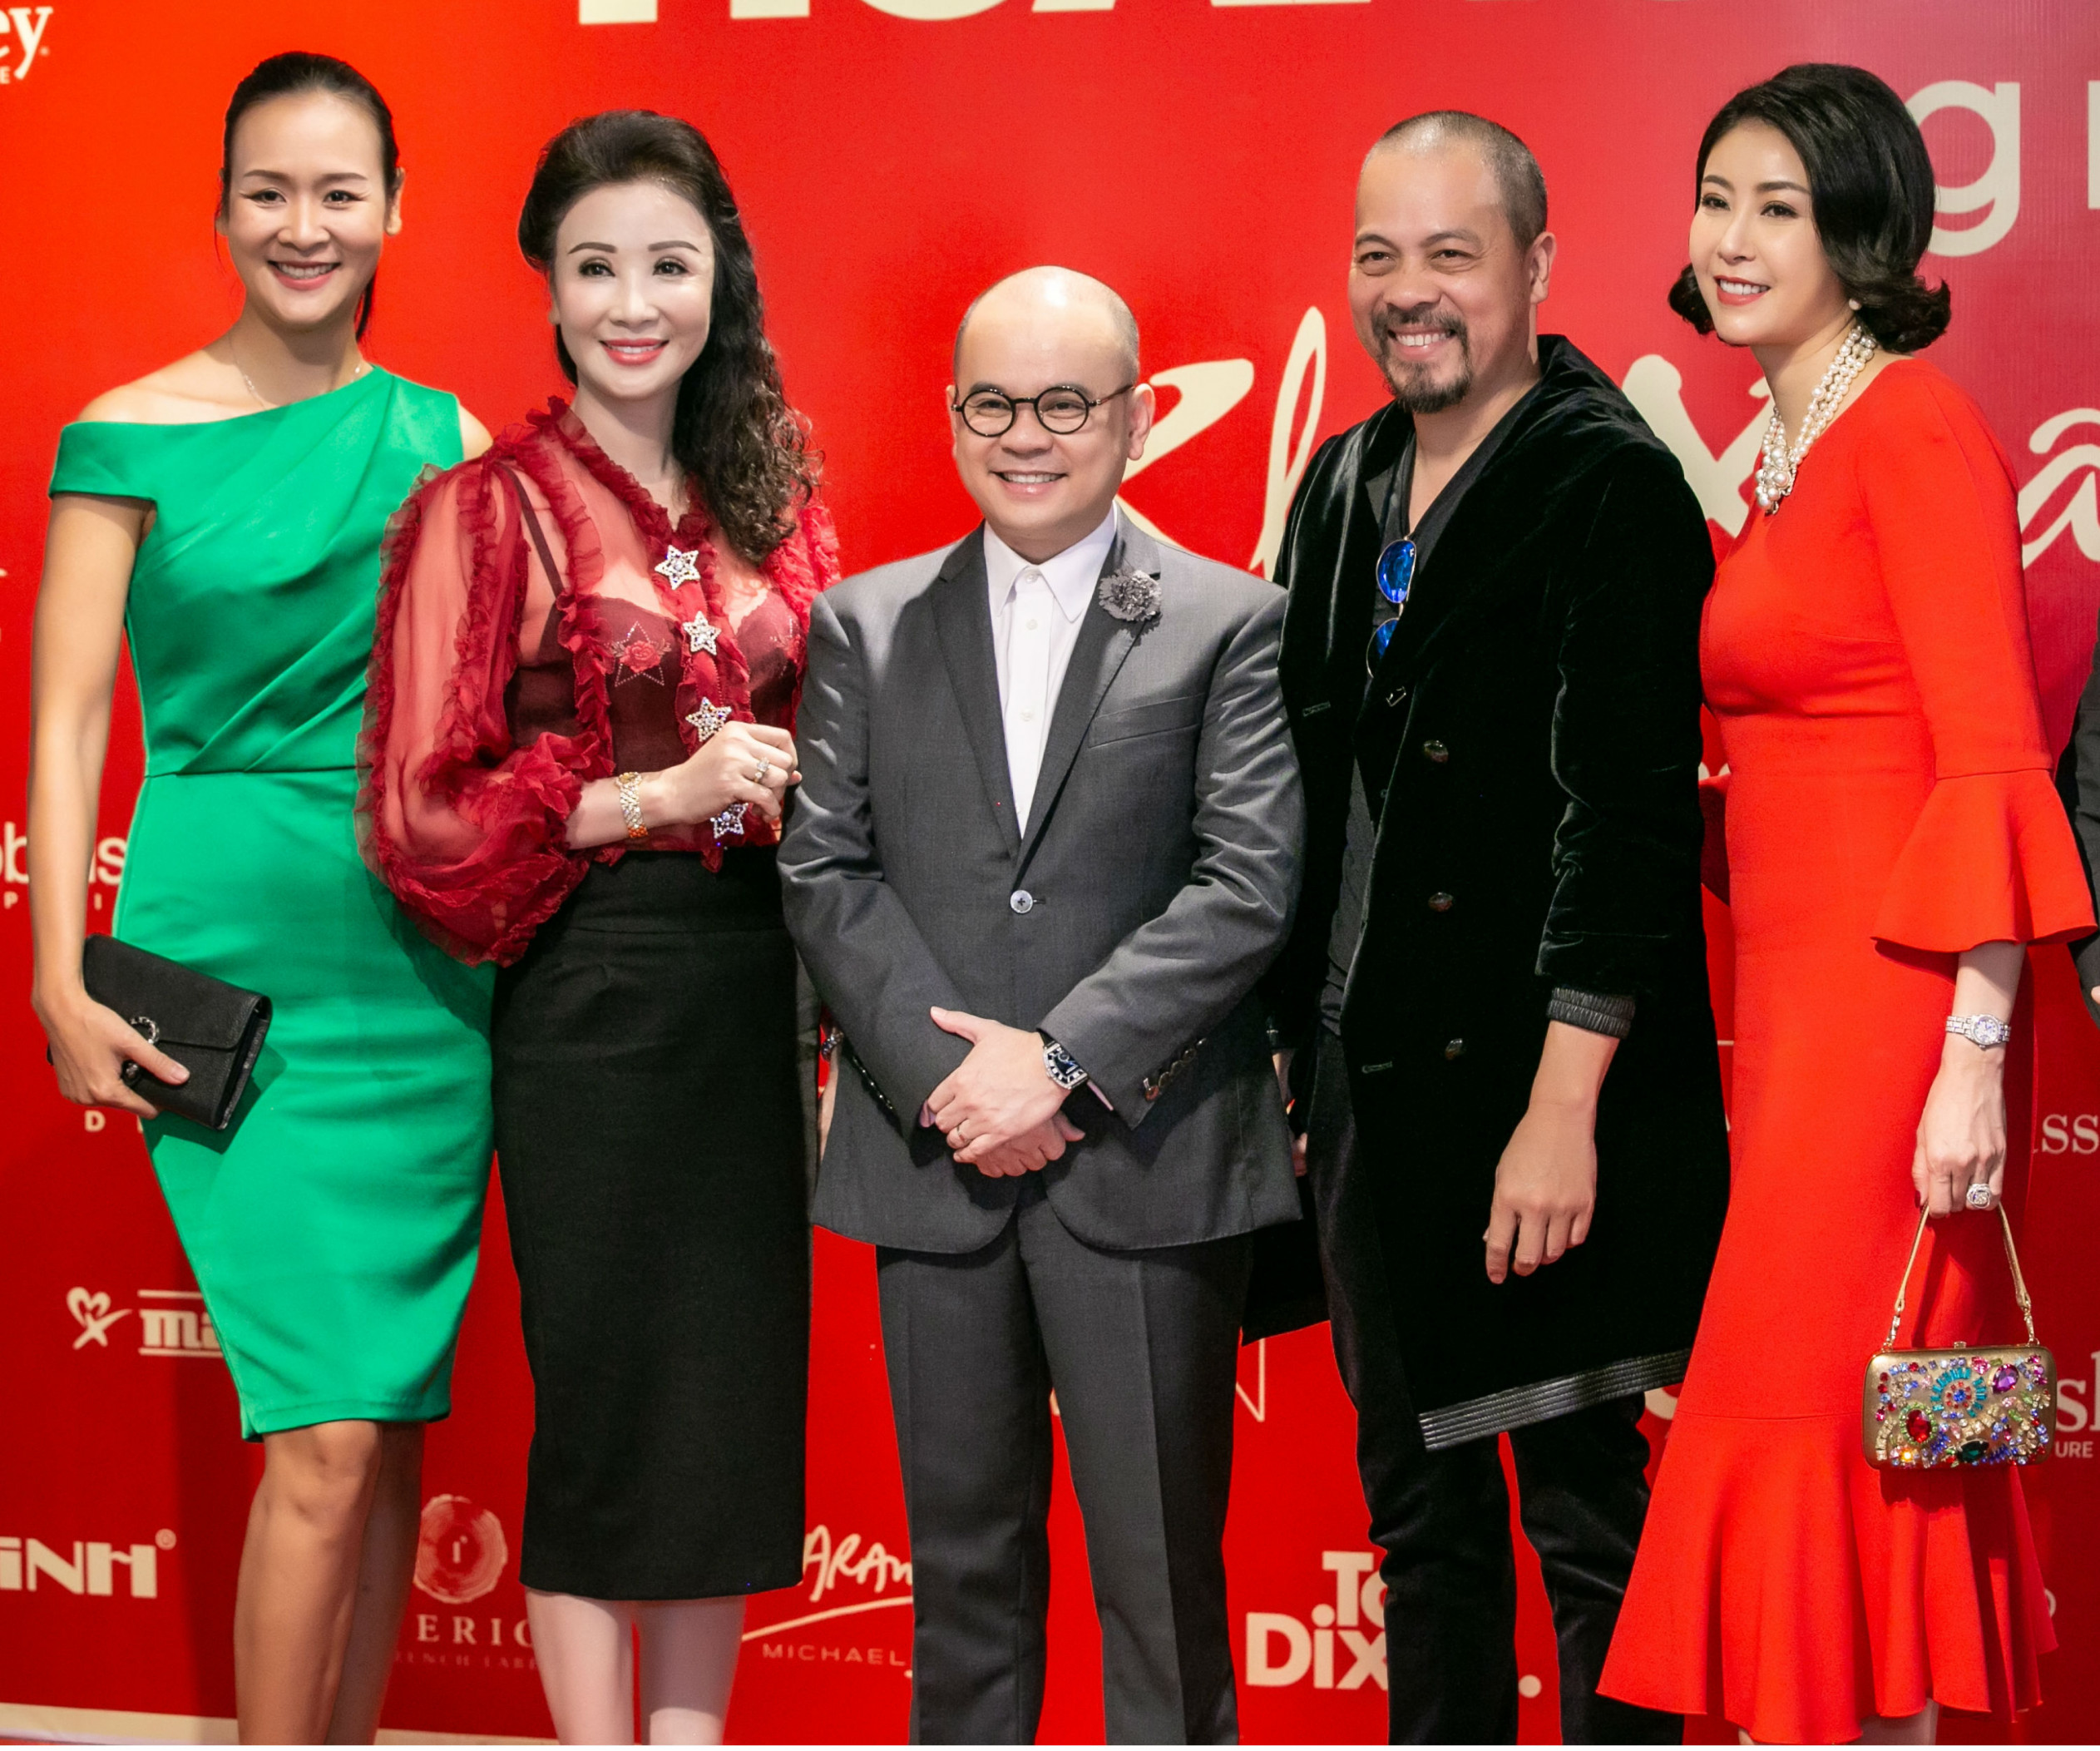 Tại sự kiện, Trần Bảo Ngọc và Hà Kiều Anh còn có dịp hội ngộ cùng Hoa hậu Quý bà Vũ Thúy Nga, doanh nhân Dương Quốc Nam, nhà thiết kế Đức Hùng.